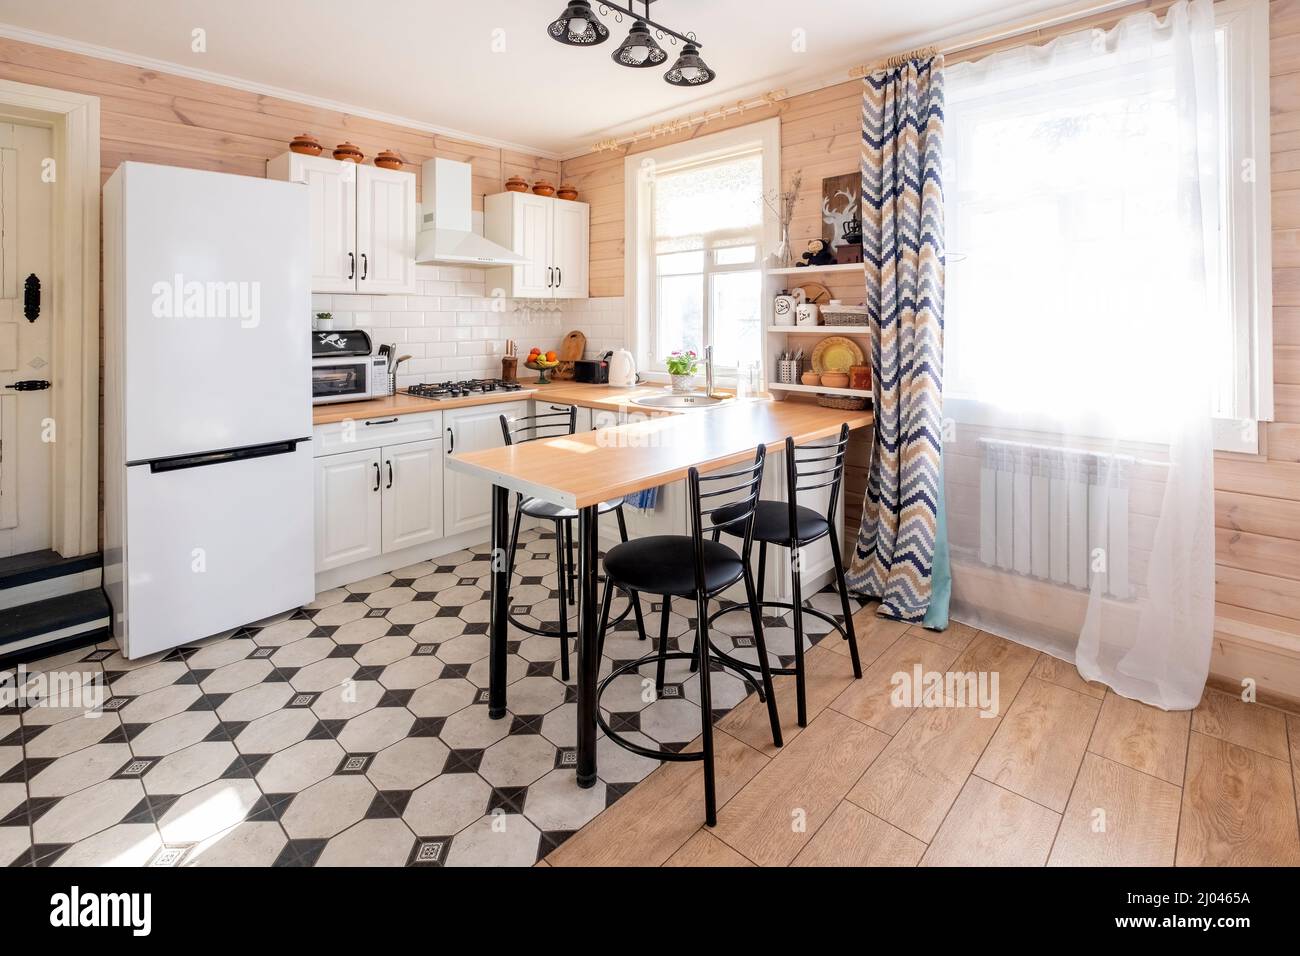 Moderne, weiße U-förmige Küche im skandinavischen Stil. In einem hellen rustikalen Haus, wo die Küche mit dem Wohnzimmer kombiniert wird Stockfoto